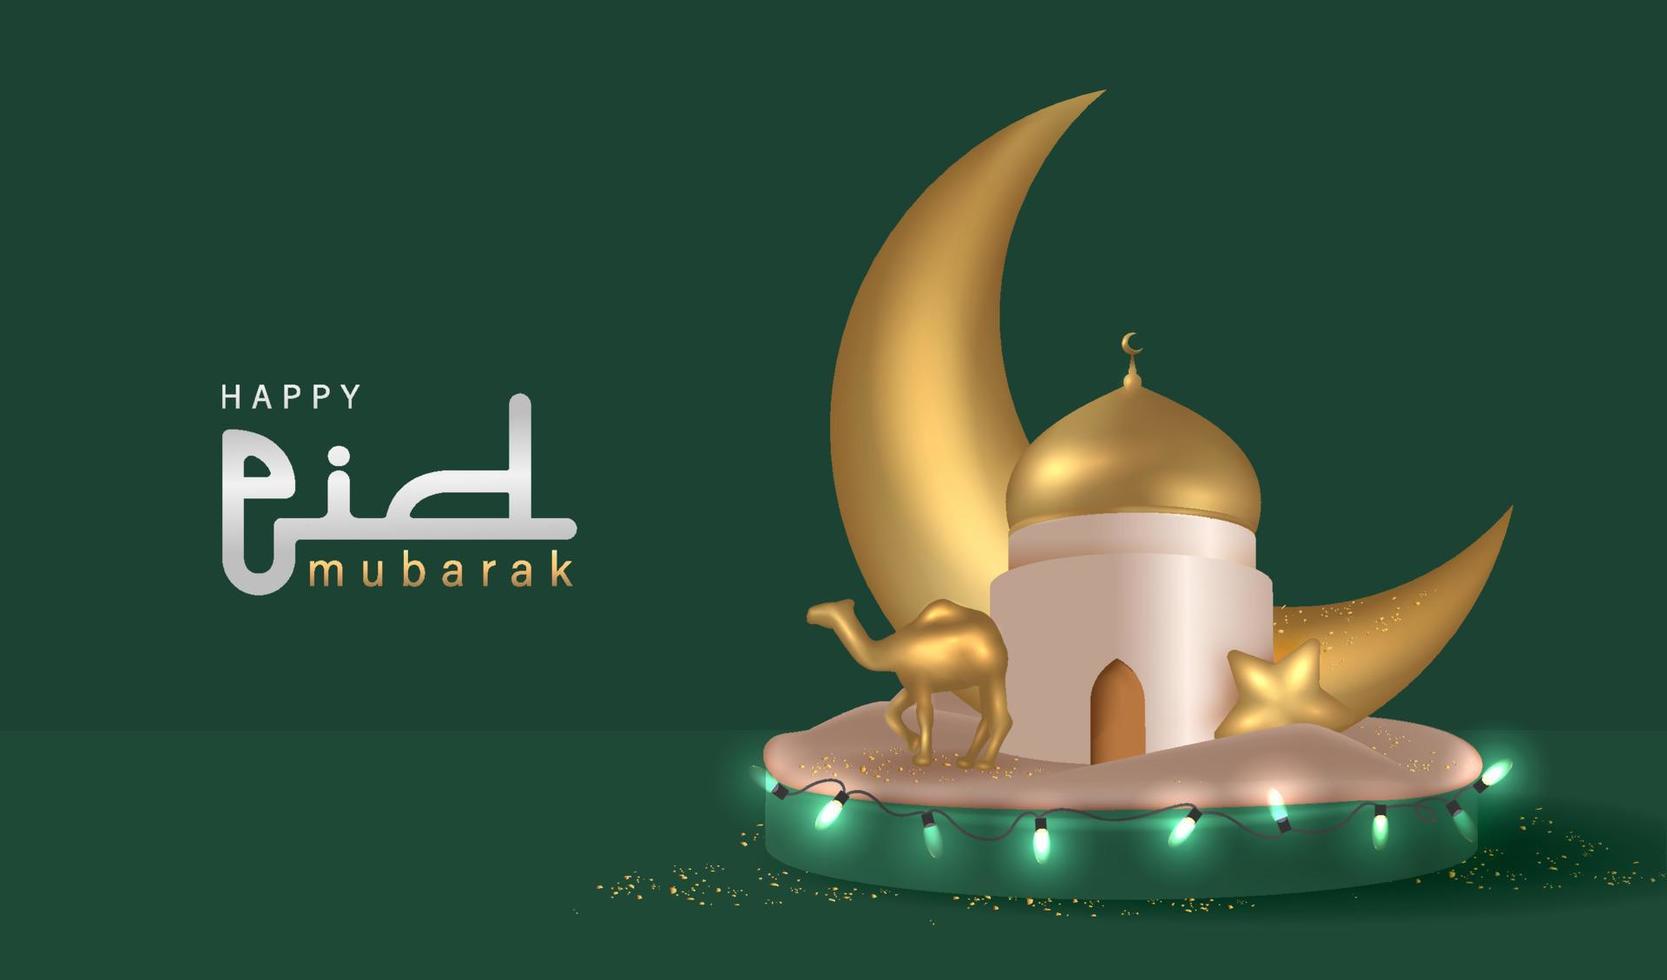 conception de ramadan kareem avec illustration vectorielle d'ornement islamique réaliste 3d vecteur